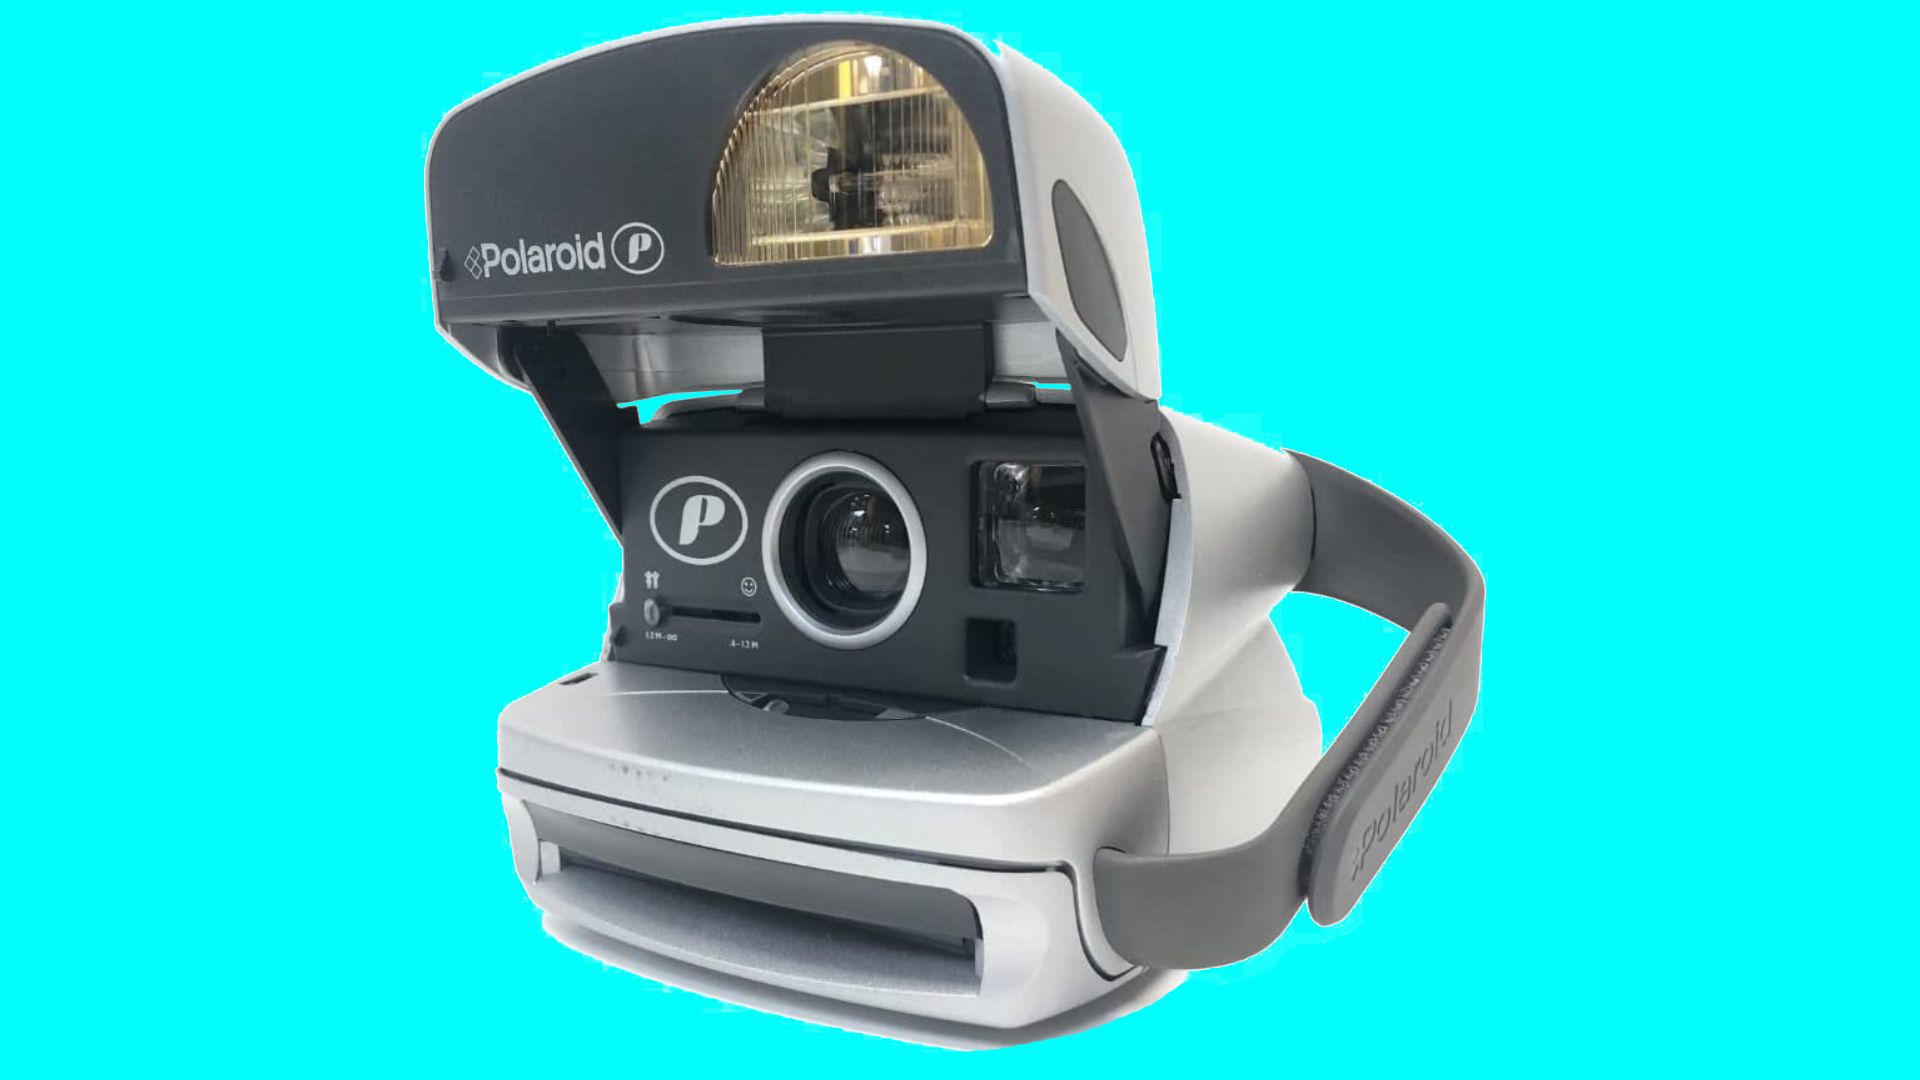 Kamera instan Polaroid P600 dengan latar belakang biru cerah